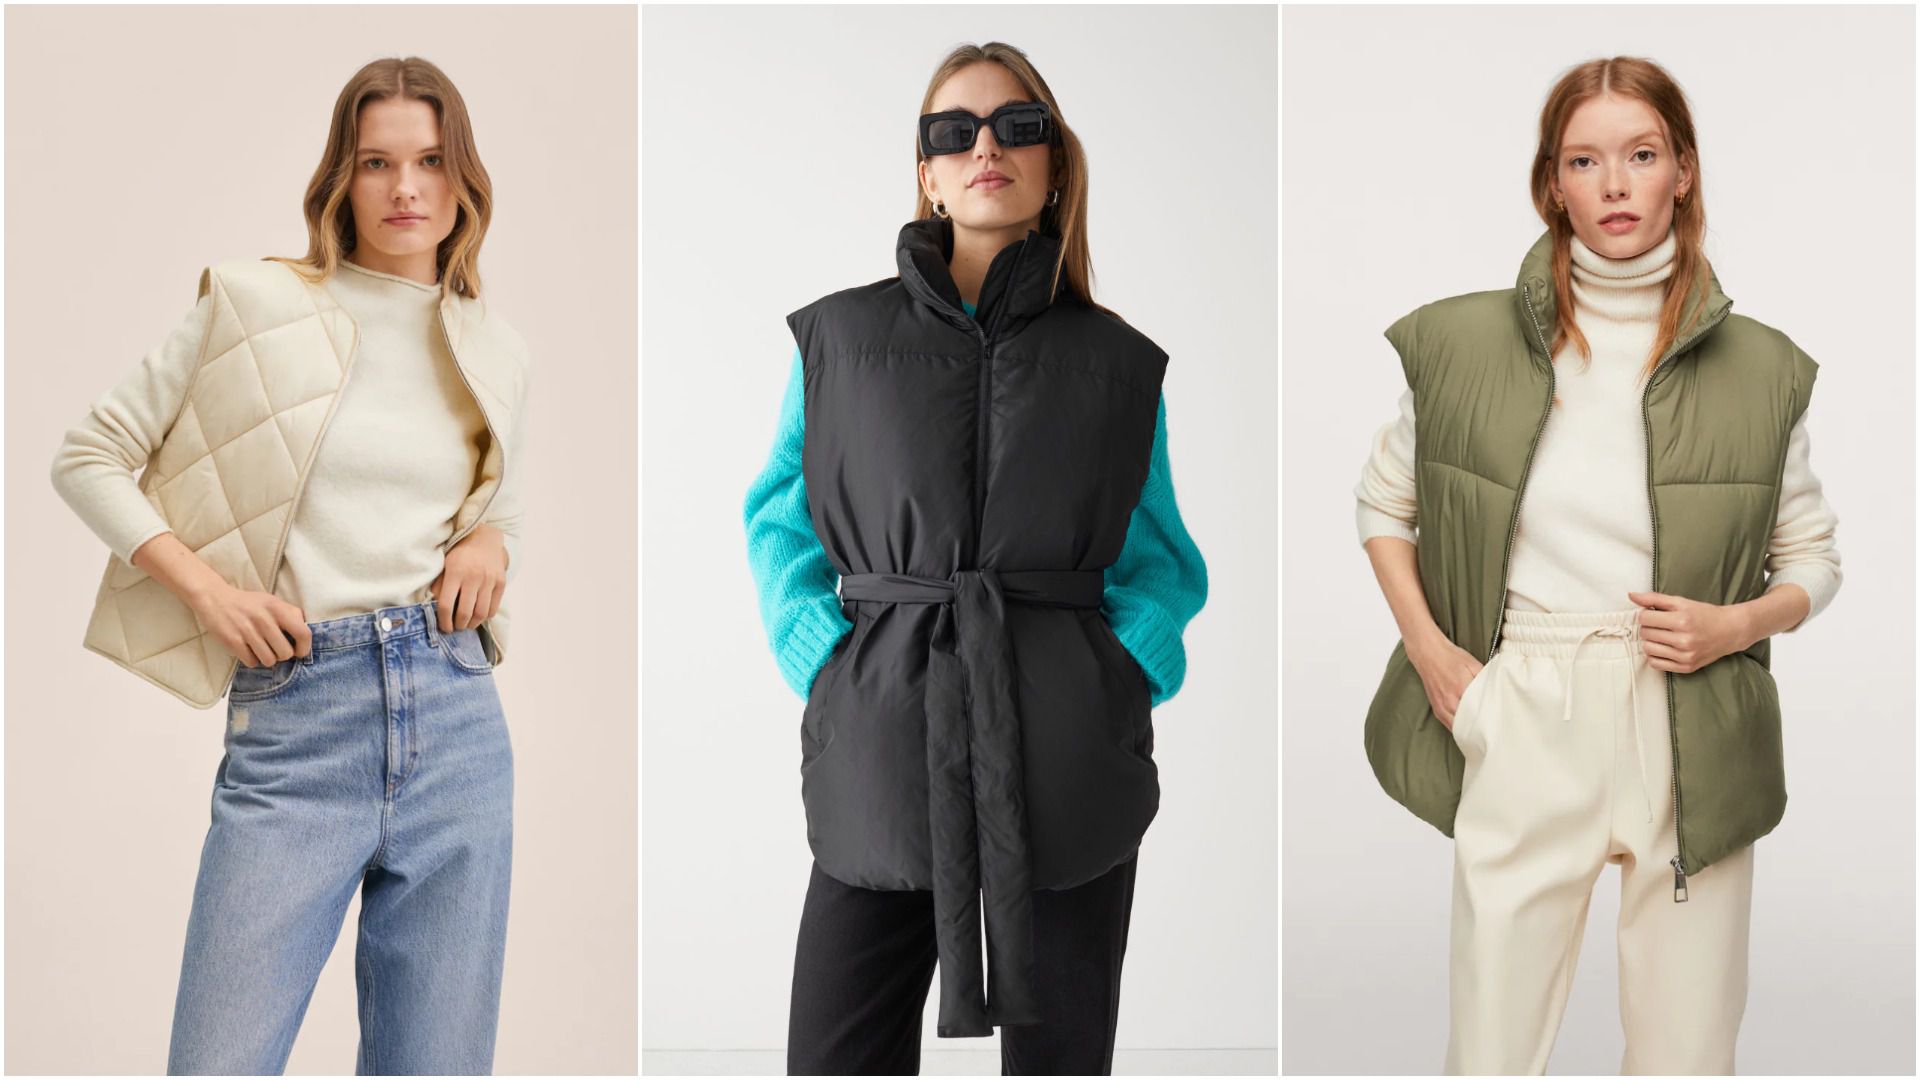 Praktičan odabir za svaki dan: Umjesto jakne, odaberite prsluk, komad idealan za prijelaznu sezonu